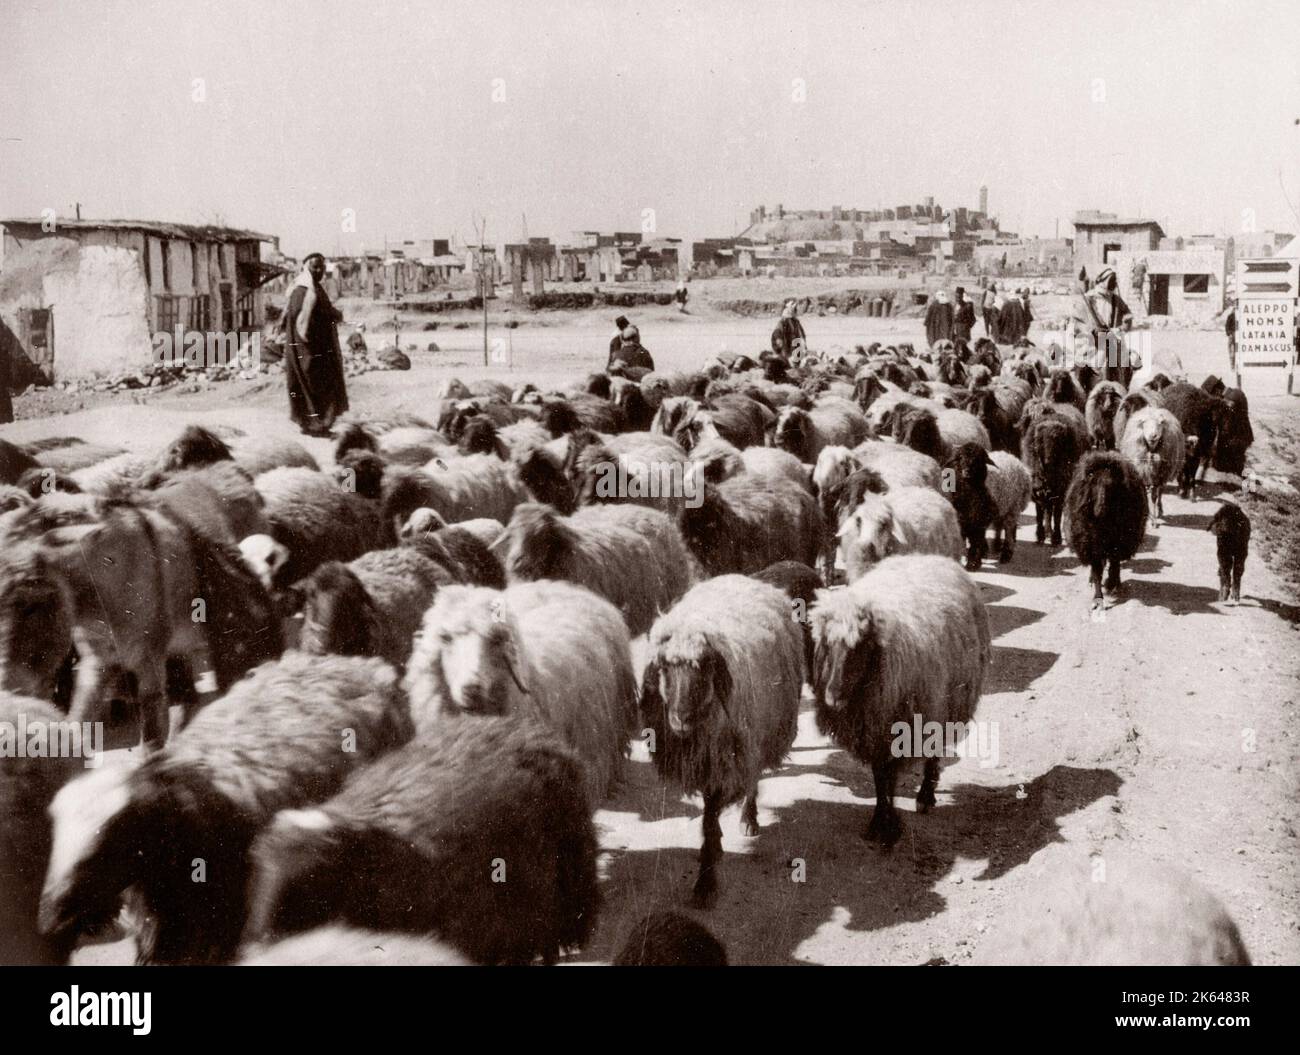 1943 Moyen-Orient Syrie - scène à Alep - moutons sur le marché Photographie d'un officier de recrutement de l'armée britannique stationné en Afrique de l'est et au Moyen-Orient pendant la Seconde Guerre mondiale Banque D'Images